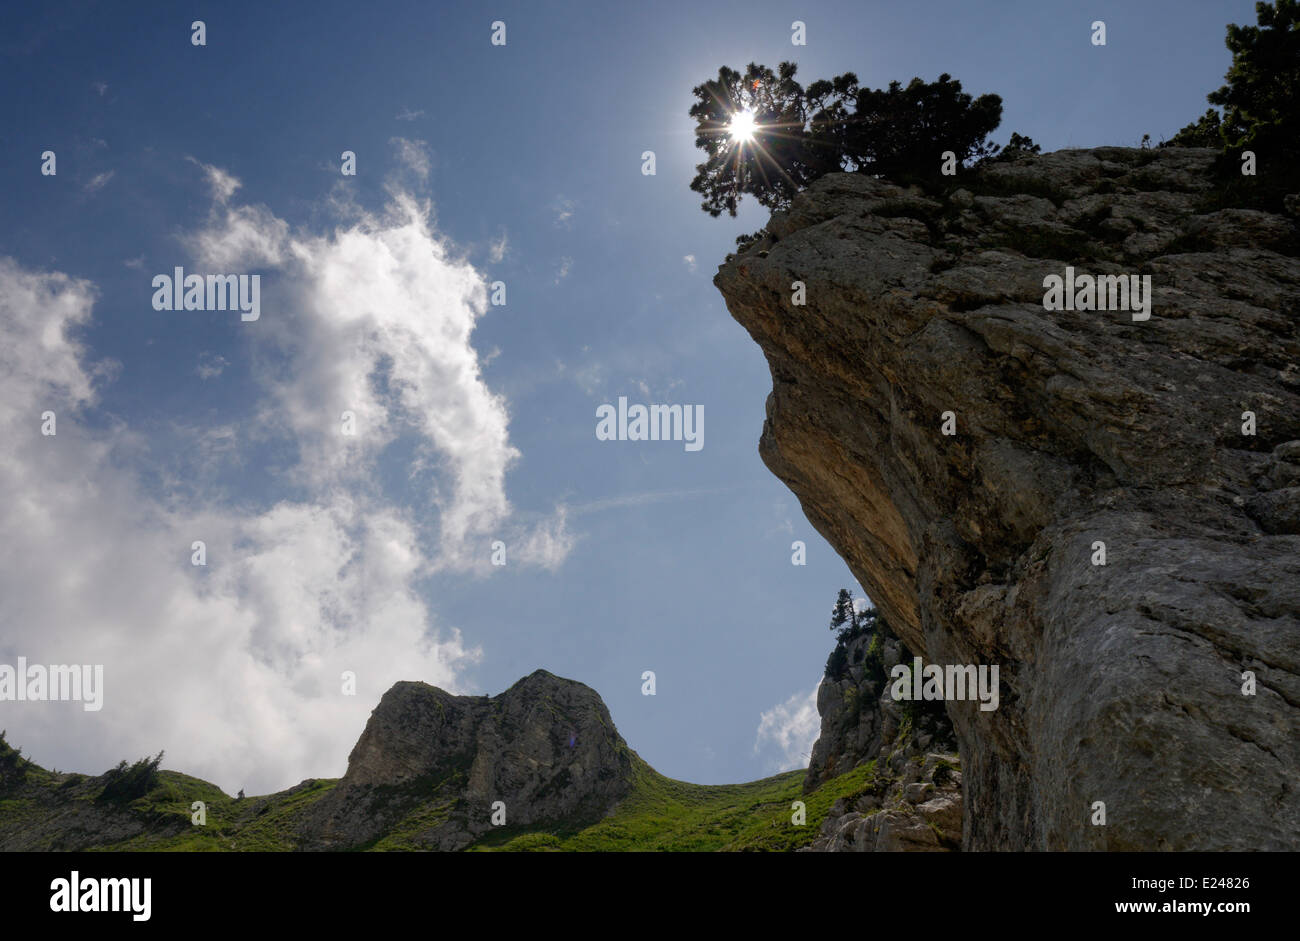 Espectacular paisaje de roca caliza en el rango de Chartreuse, cerca de Grenoble, Francia Foto de stock